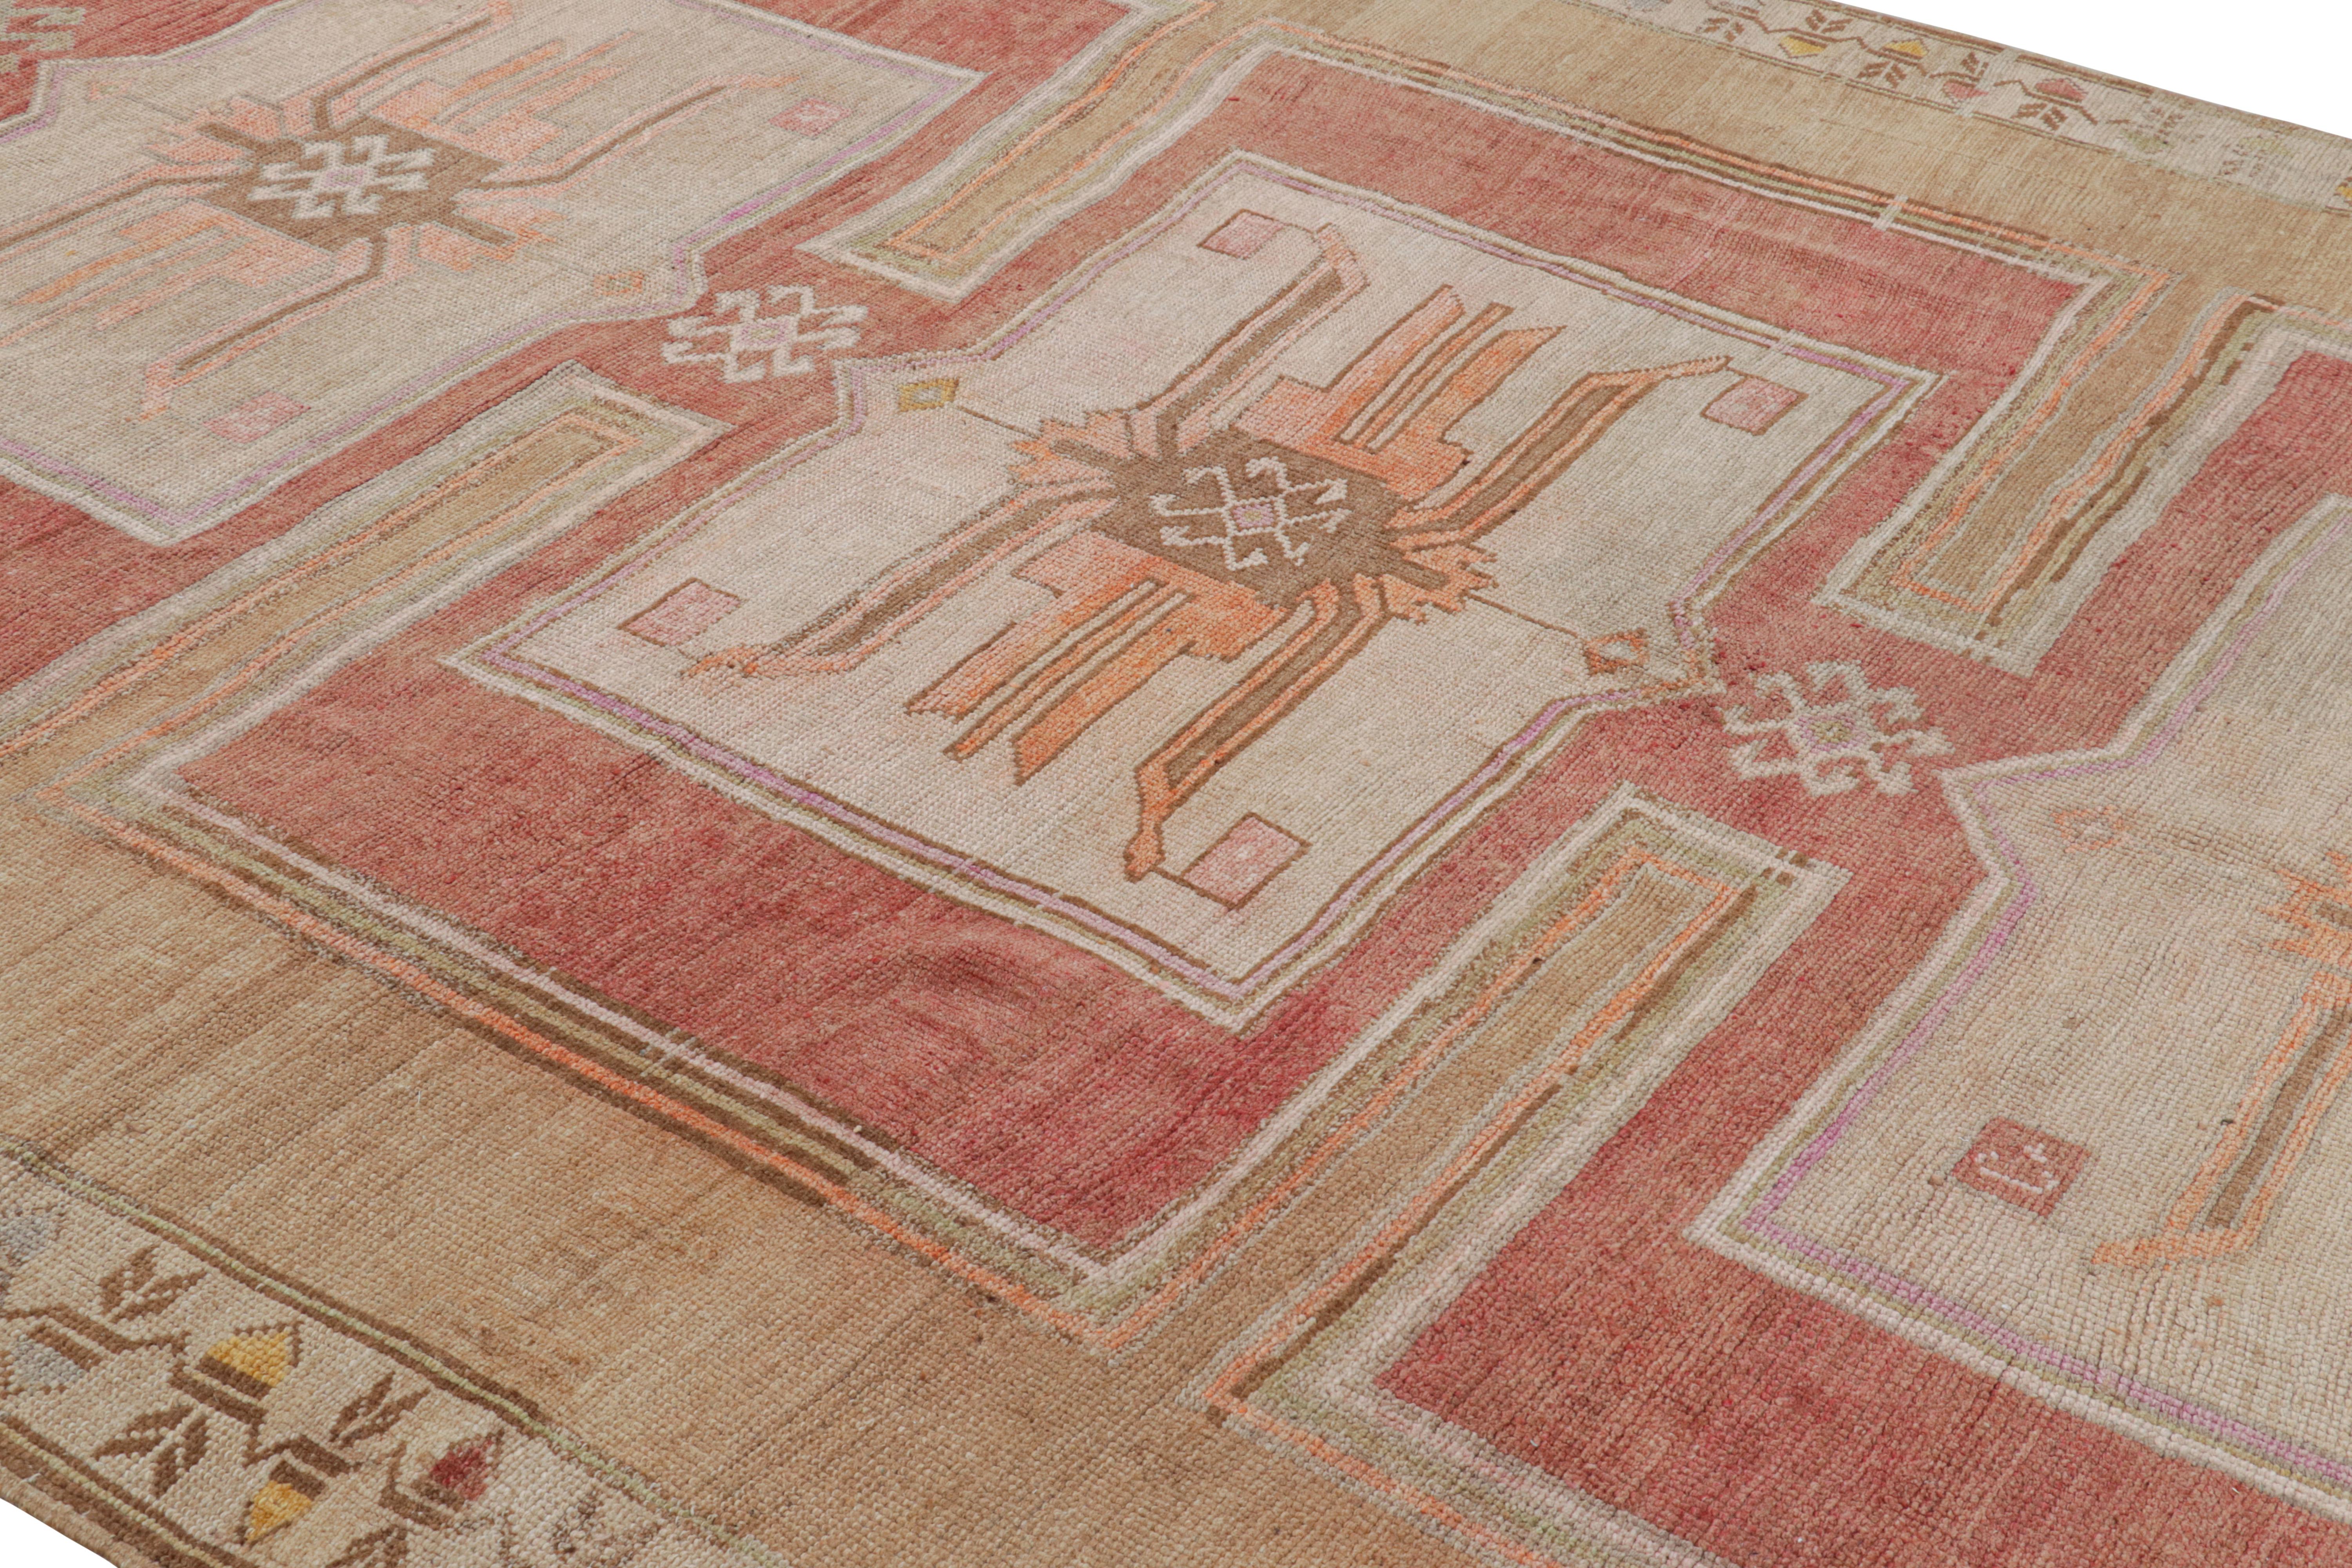 Noué à la main en laine, ce tapis Oushak turc vintage 9x14 présente des médaillons proéminents et des motifs géométriques sur un champ beige-brun et rouge. 

Sur le Design : 

Les connaisseurs admireront cette pièce vintage personnelle destinée à